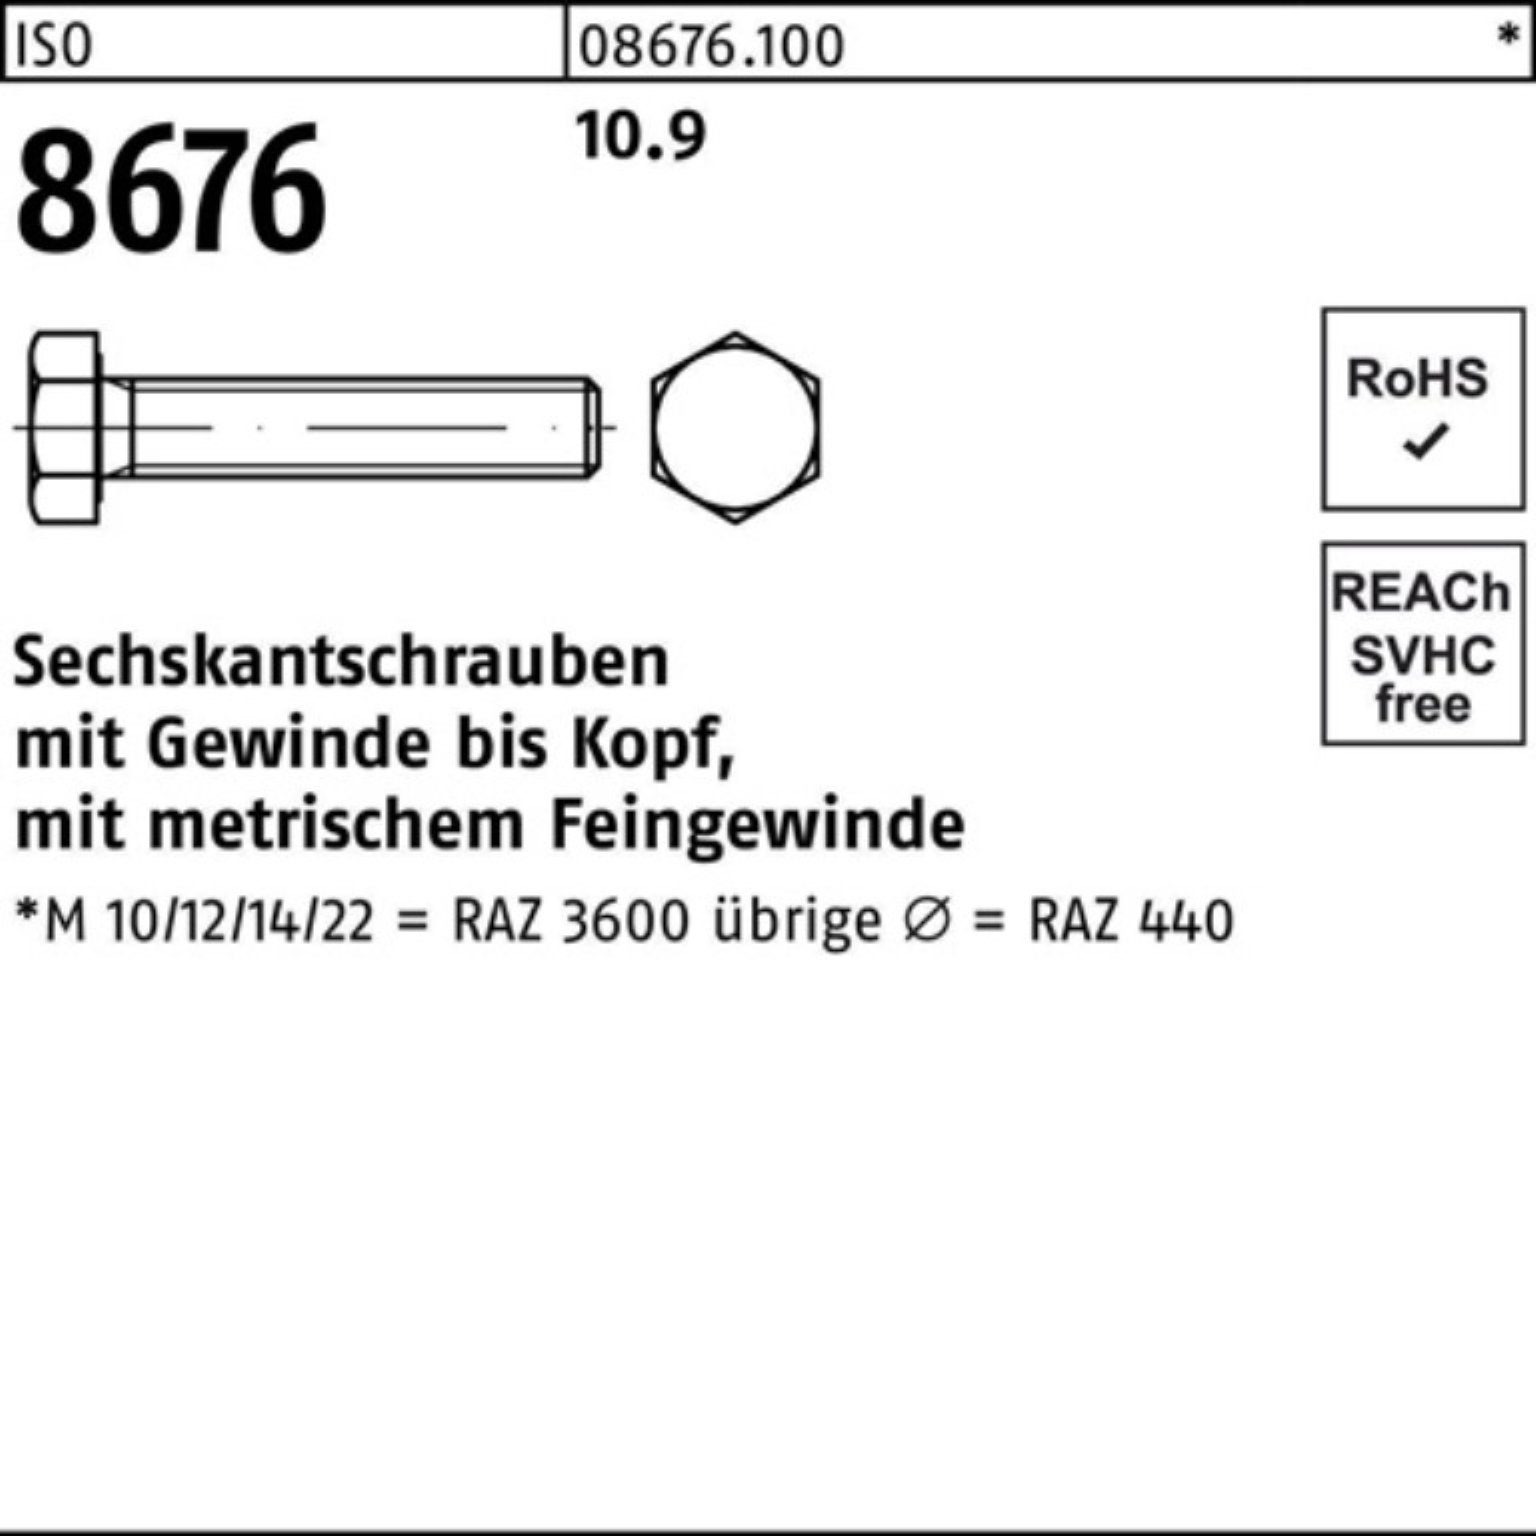 Stück 25 IS Reyher VG M20x1,5x130 100er ISO 8676 Sechskantschraube 10.9 Sechskantschraube Pack